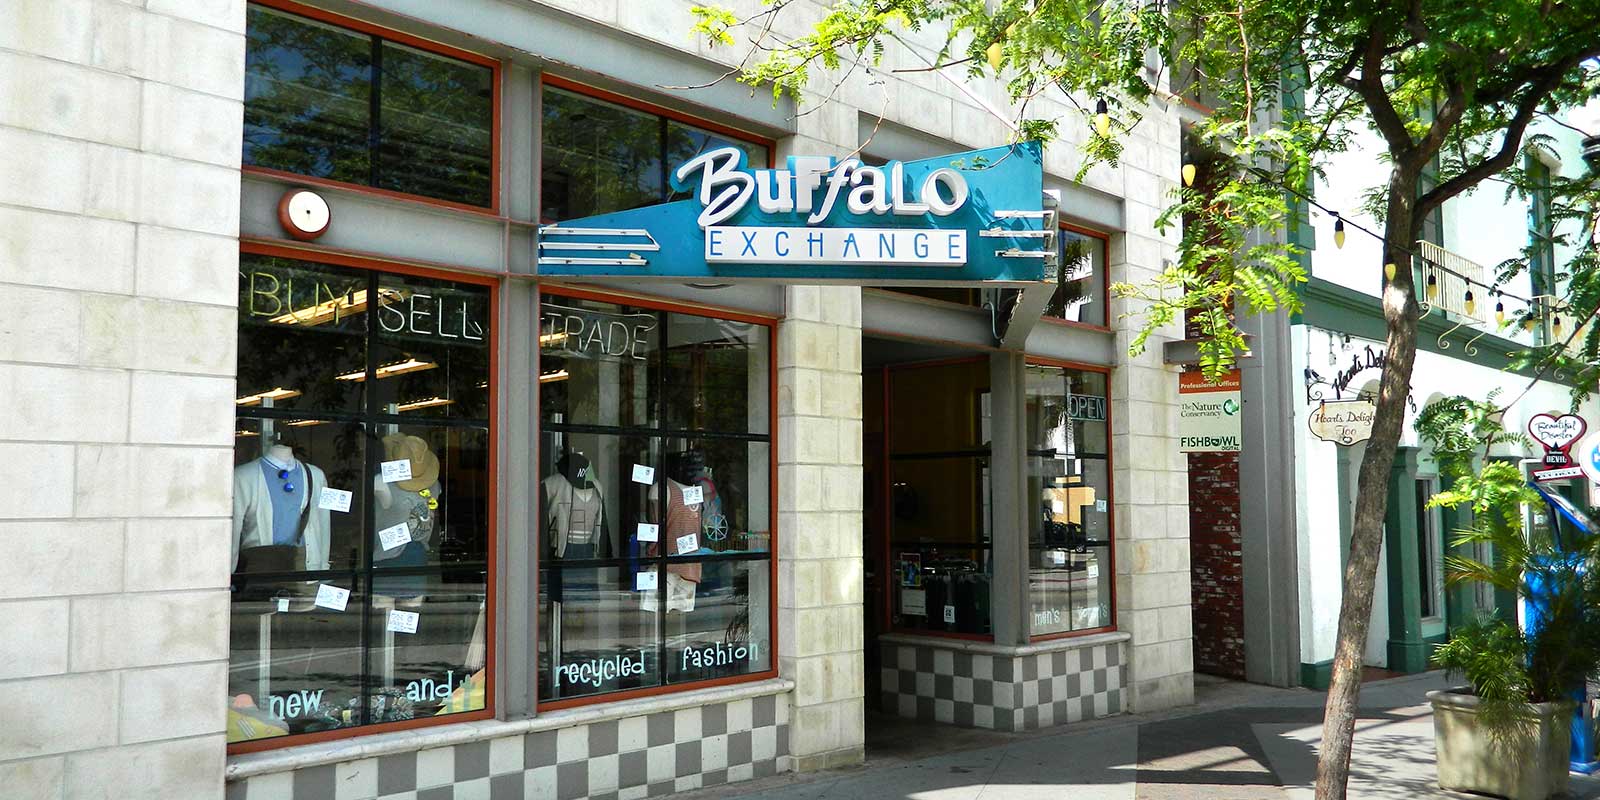 Exterior of Buffalo Exchange Ventura